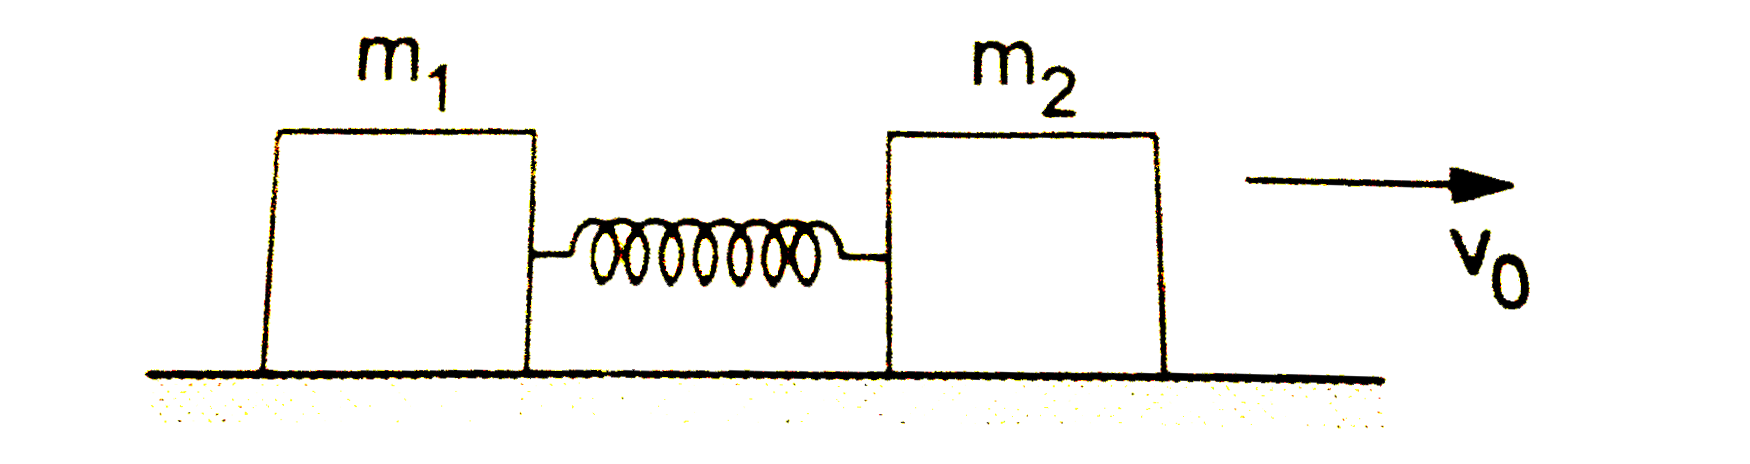 m(1) तथा m(2) द्रव्यमान वाले दो ब्लॉक k बल-नियतांक वाले स्प्रिंग से जोड़े गए हैं (चित्र 15.E6)।   m(2) द्रव्यमान वाले ब्लॉक को एक तेज झटका दिया जाता है जिसके कारण यह दाहिनी ओर v(0) वेग से चलने लगता है। ज्ञात करें,   इस निकाय के द्रव्यमान केंद्र का वेग